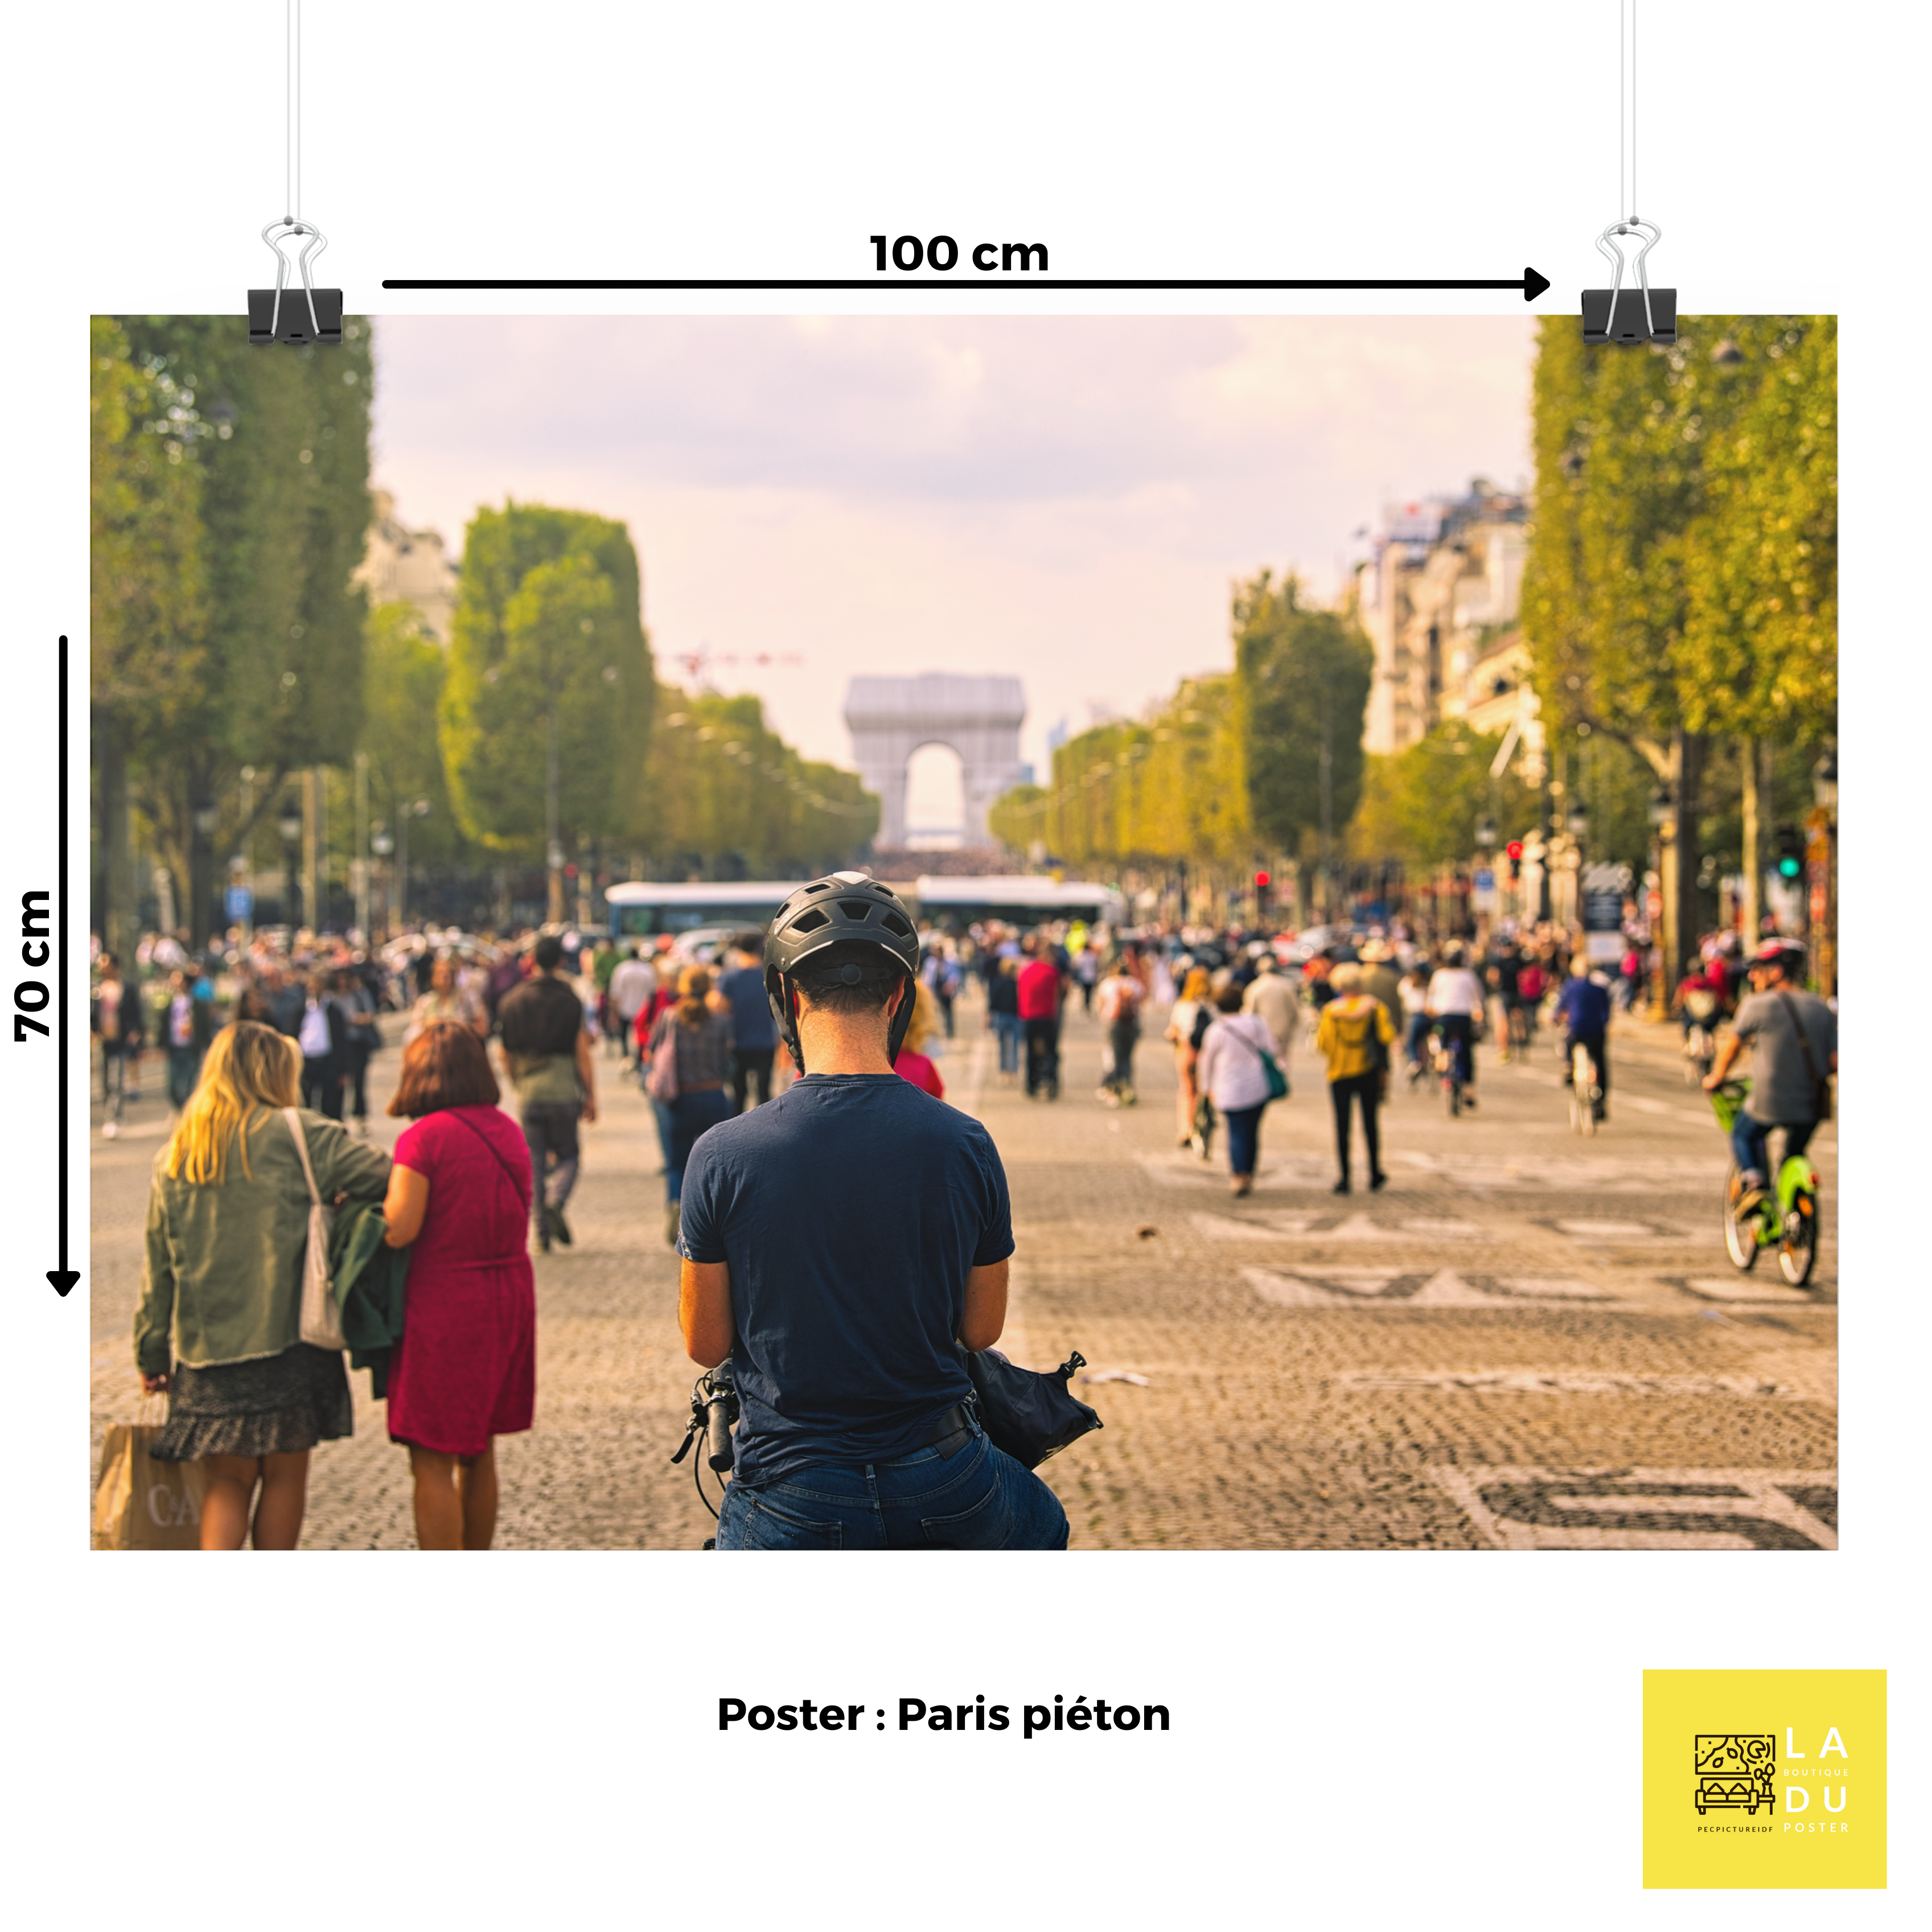 Paris piéton - Poster - La boutique du poster Français